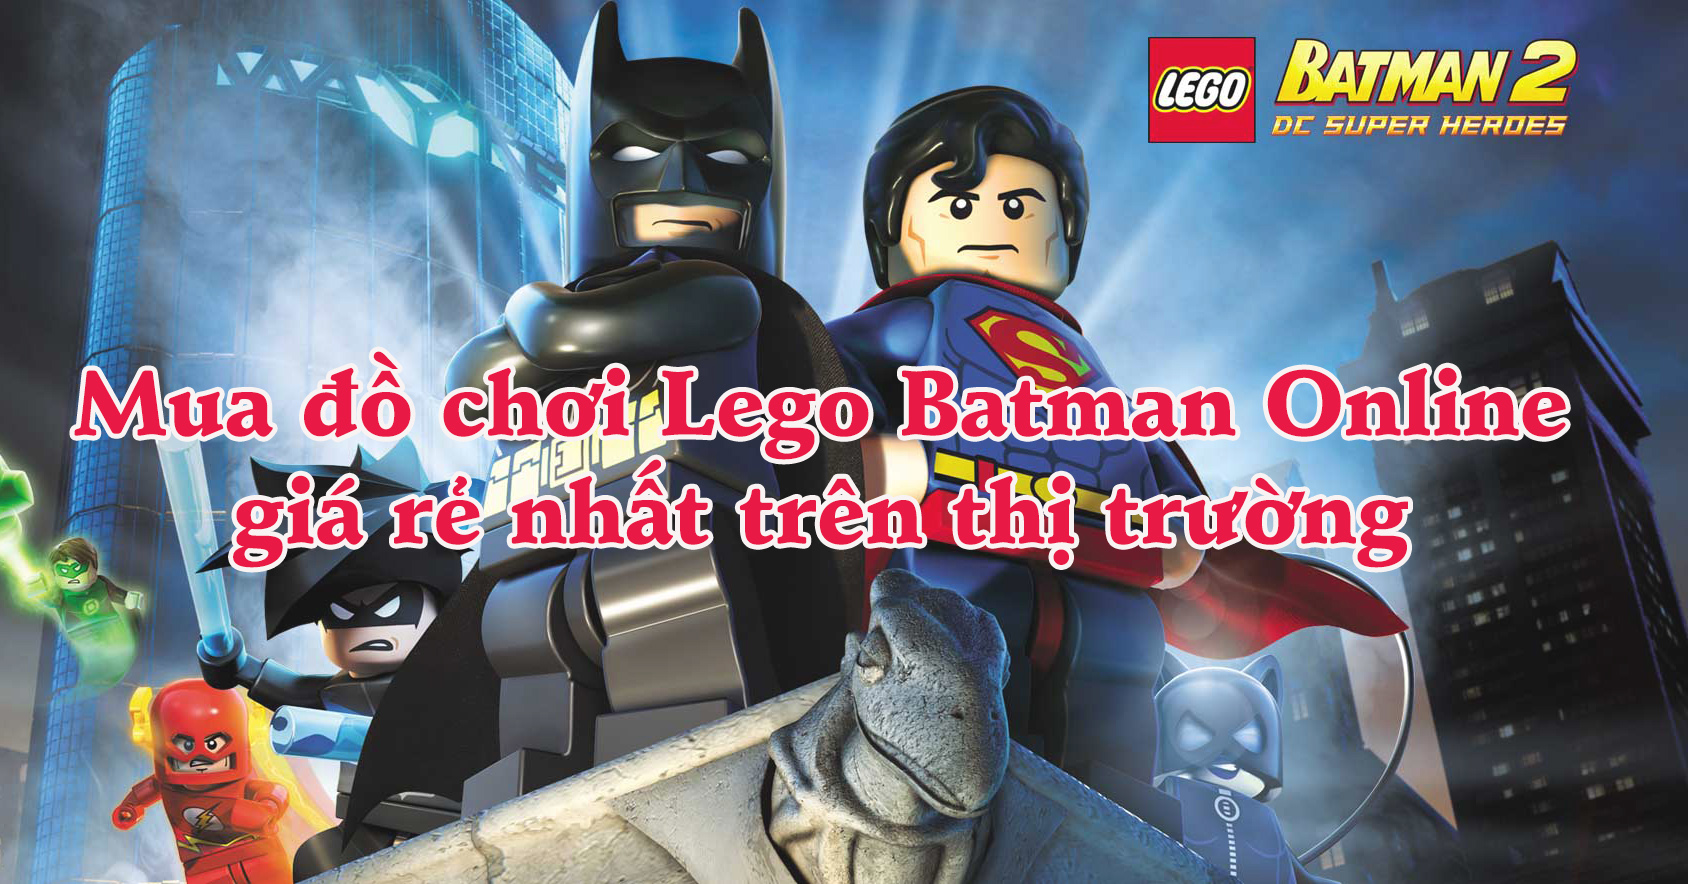 Mua đồ chơi Lego Batman Online giá rẻ nhất trên thị trường